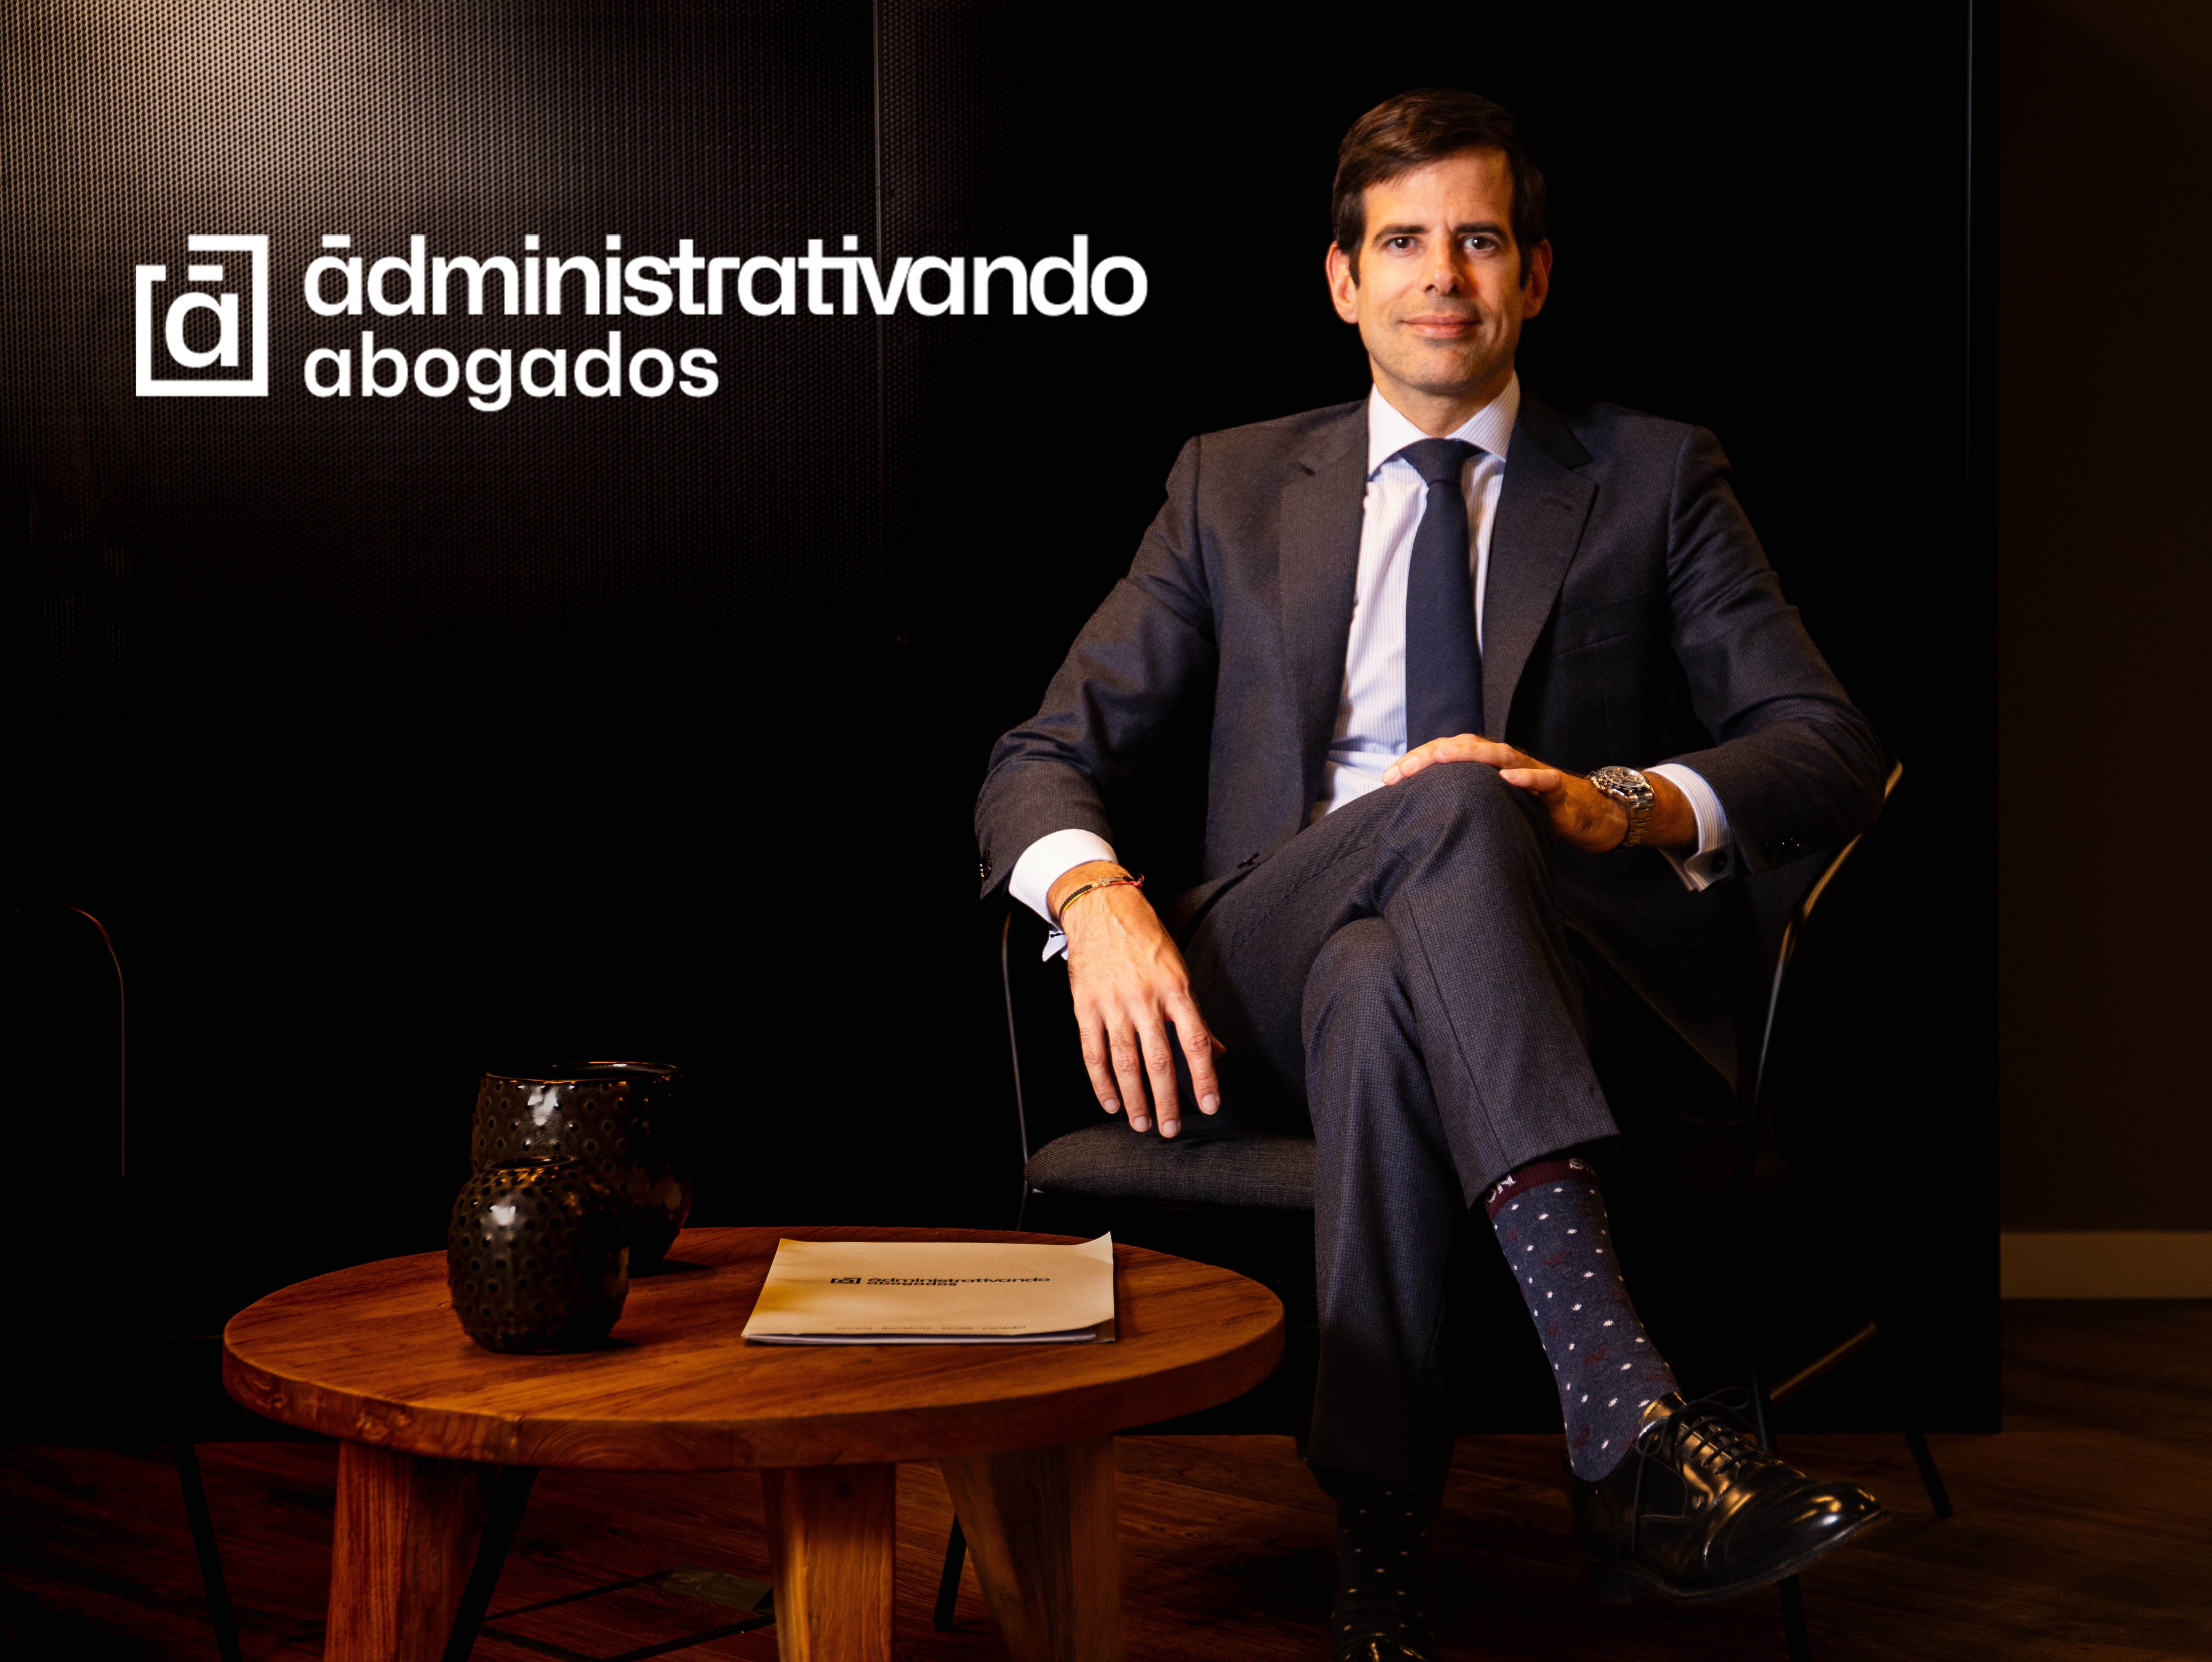 Antonio Benítez Ostos, Socio - Director y Fundador de Administrativando Abogados (Foto: Administrativando Abogados)